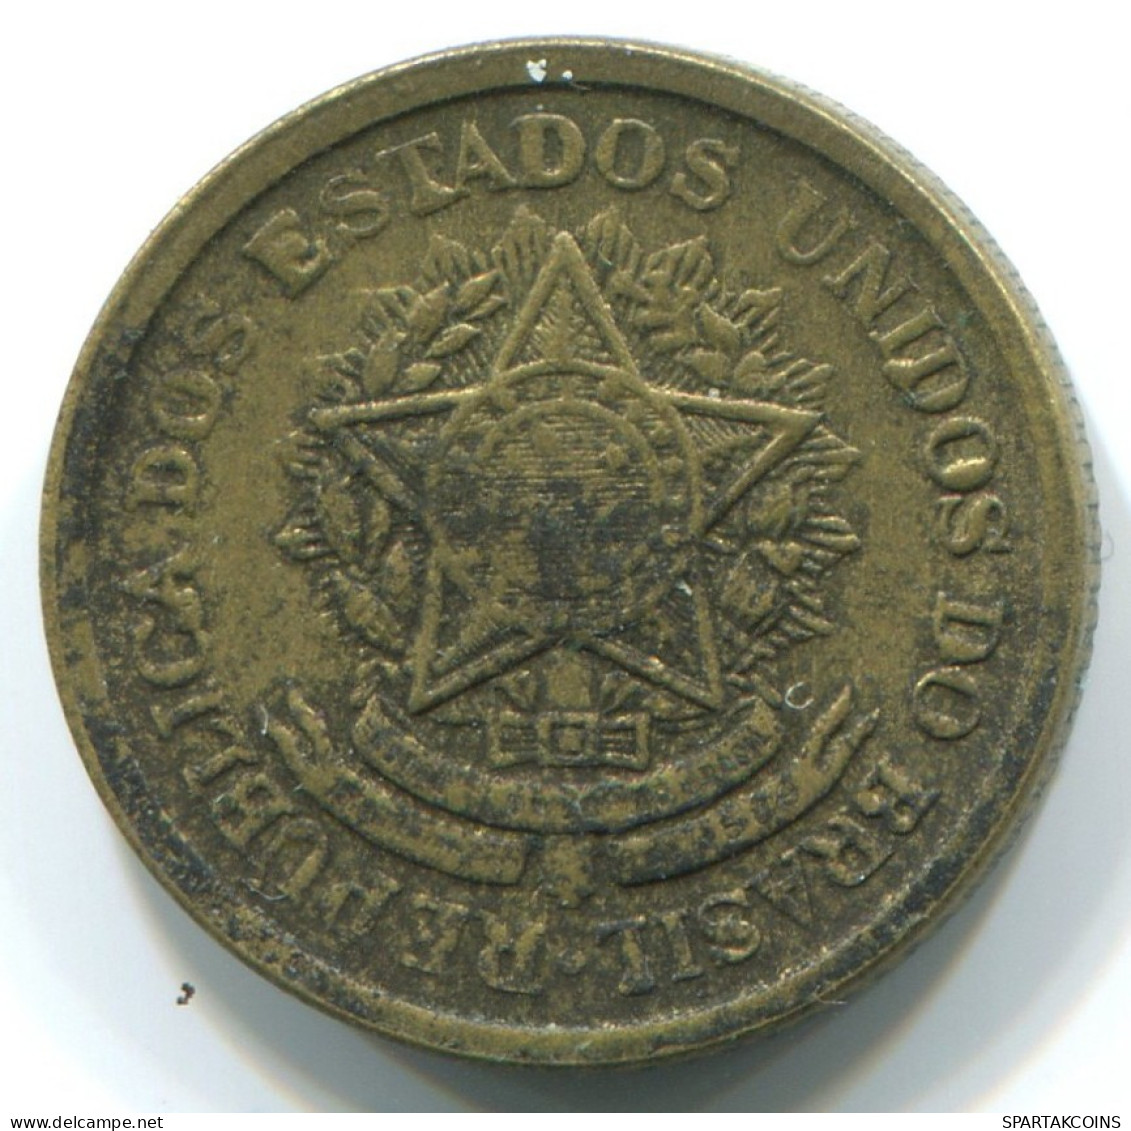 50 CENTAVOS 1956 BRAZIL Coin #WW1156.U.A - Brazilië